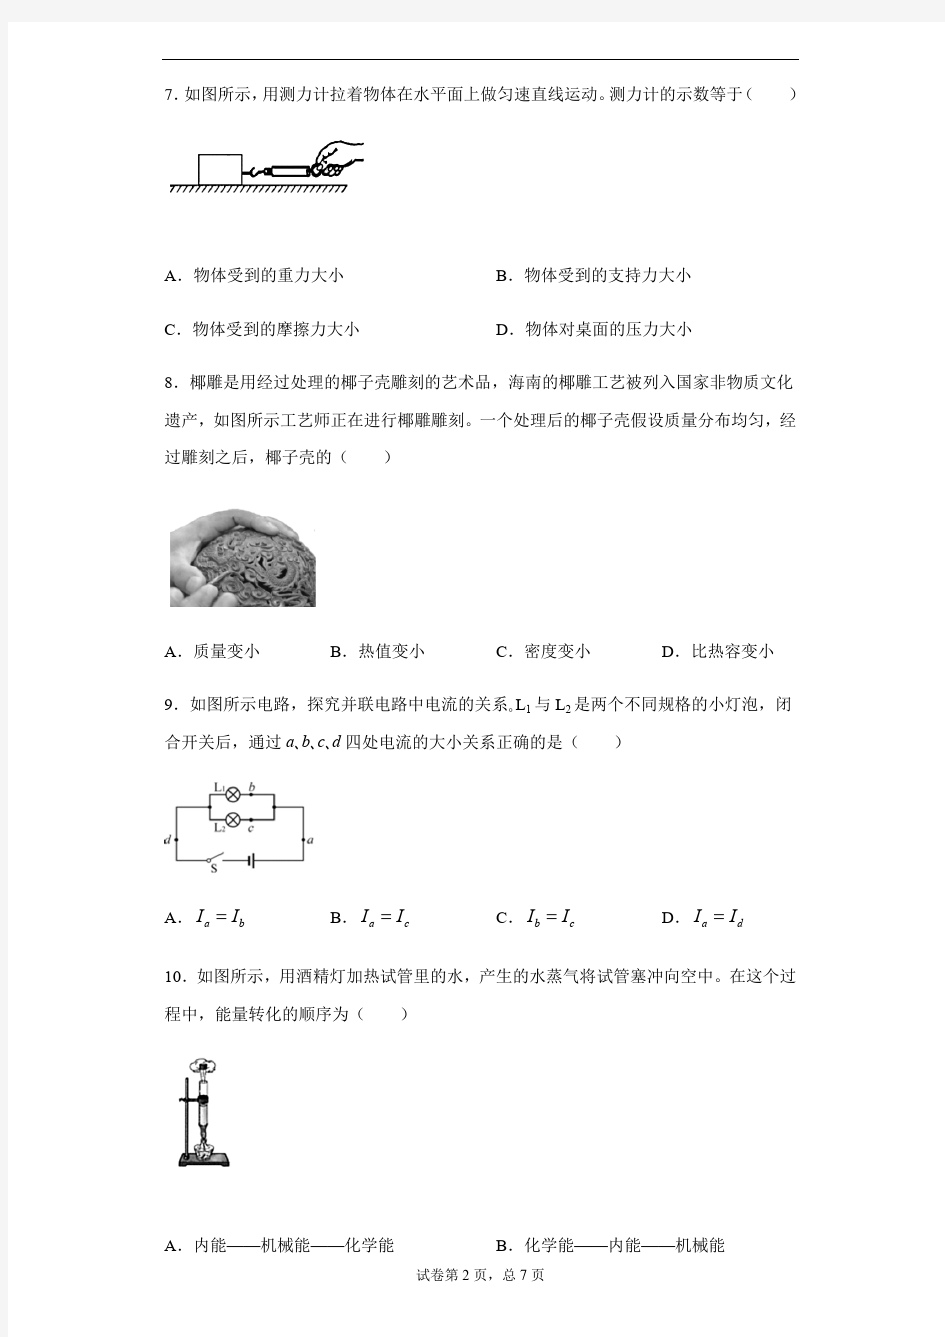 2020年海南省中考物理试卷及答案解析.pdf